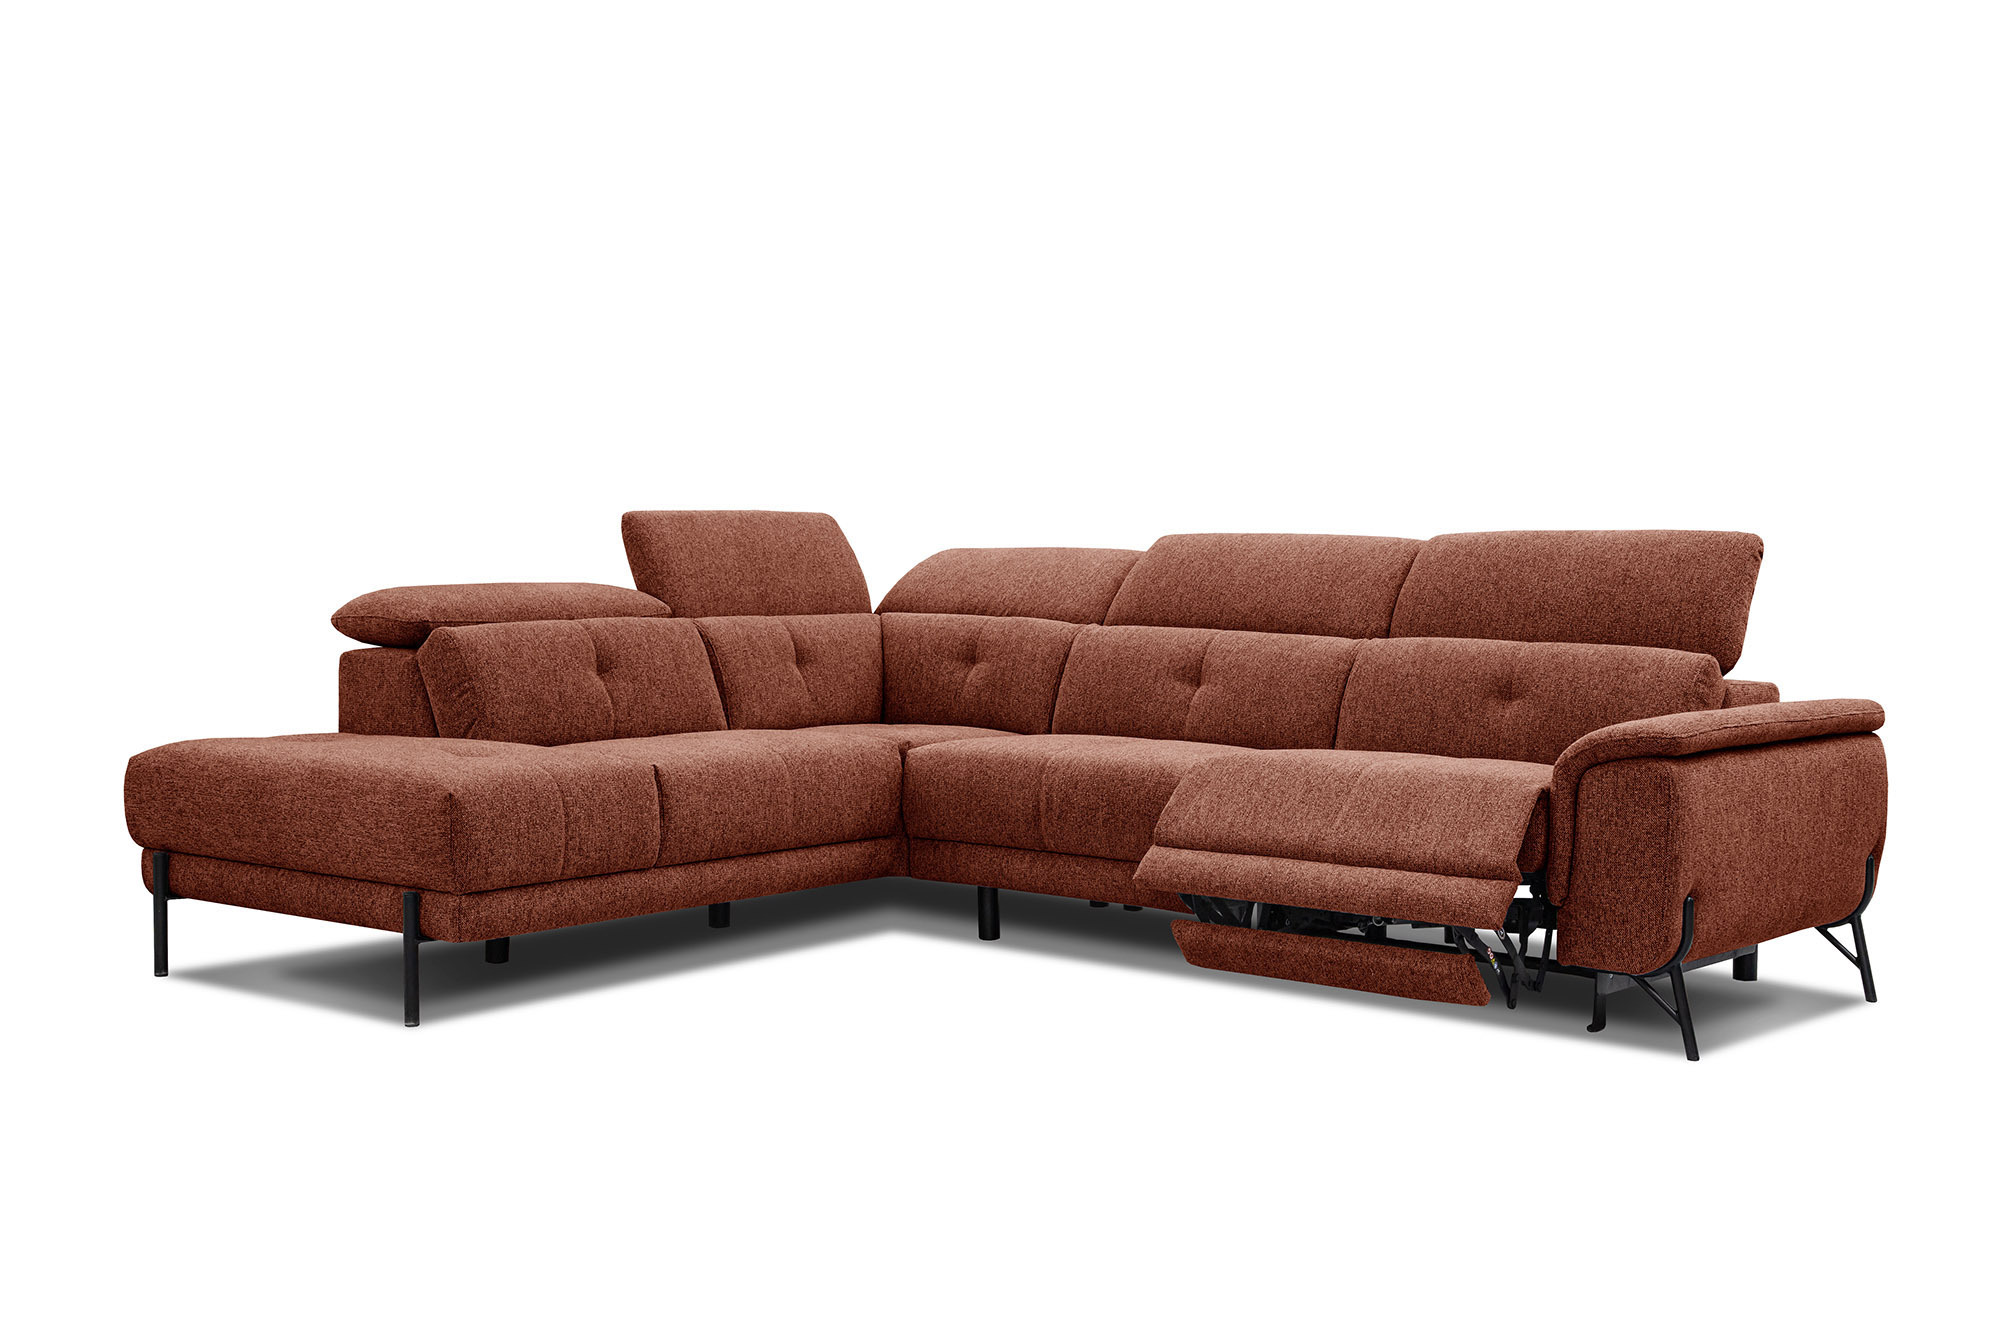 Canapé d'angle 5 places Noir Tissu Moderne Confort Promotion